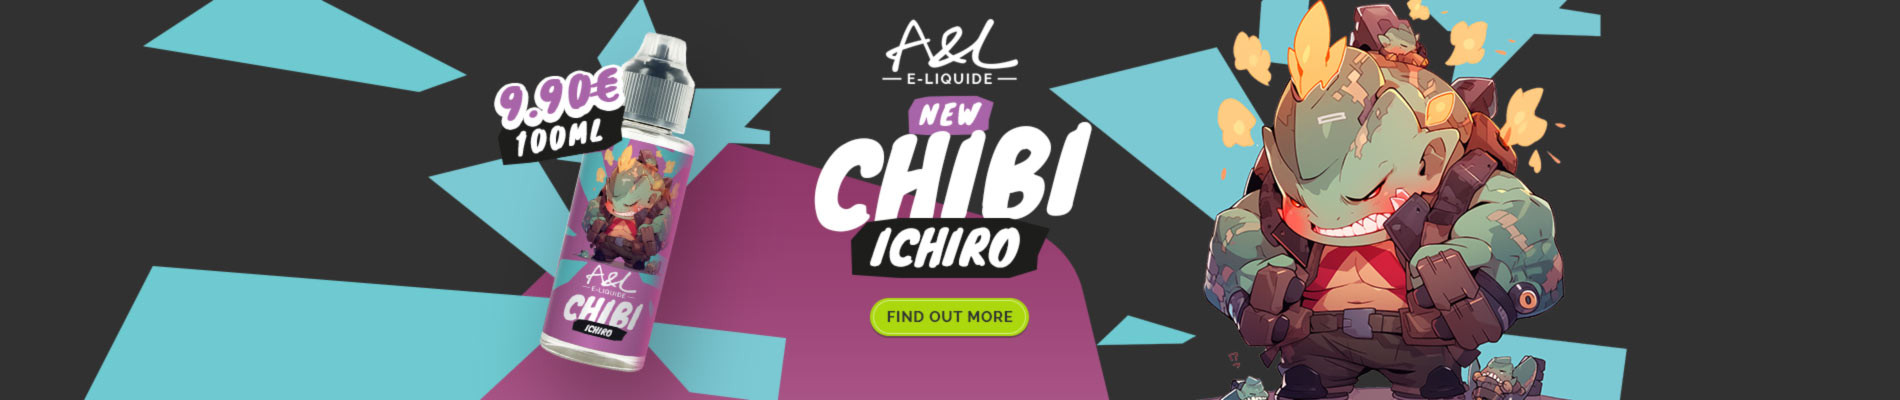 Ichiro CHIBI A&L